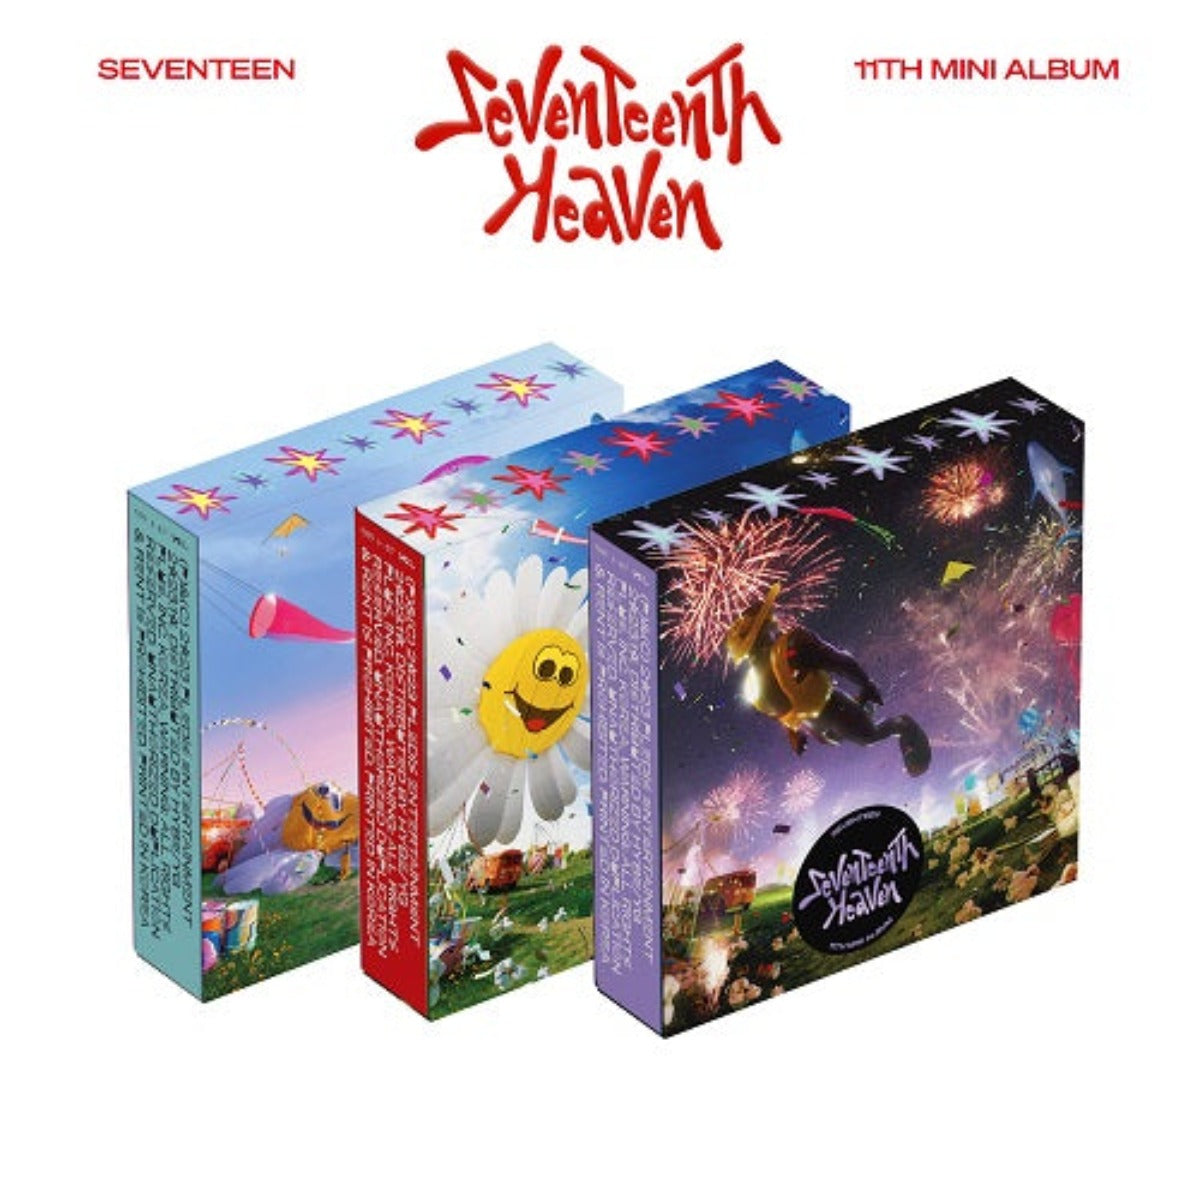 Seventeen Mini vol.11 - SEVENTEENTH HEAVEN (Random Cover)